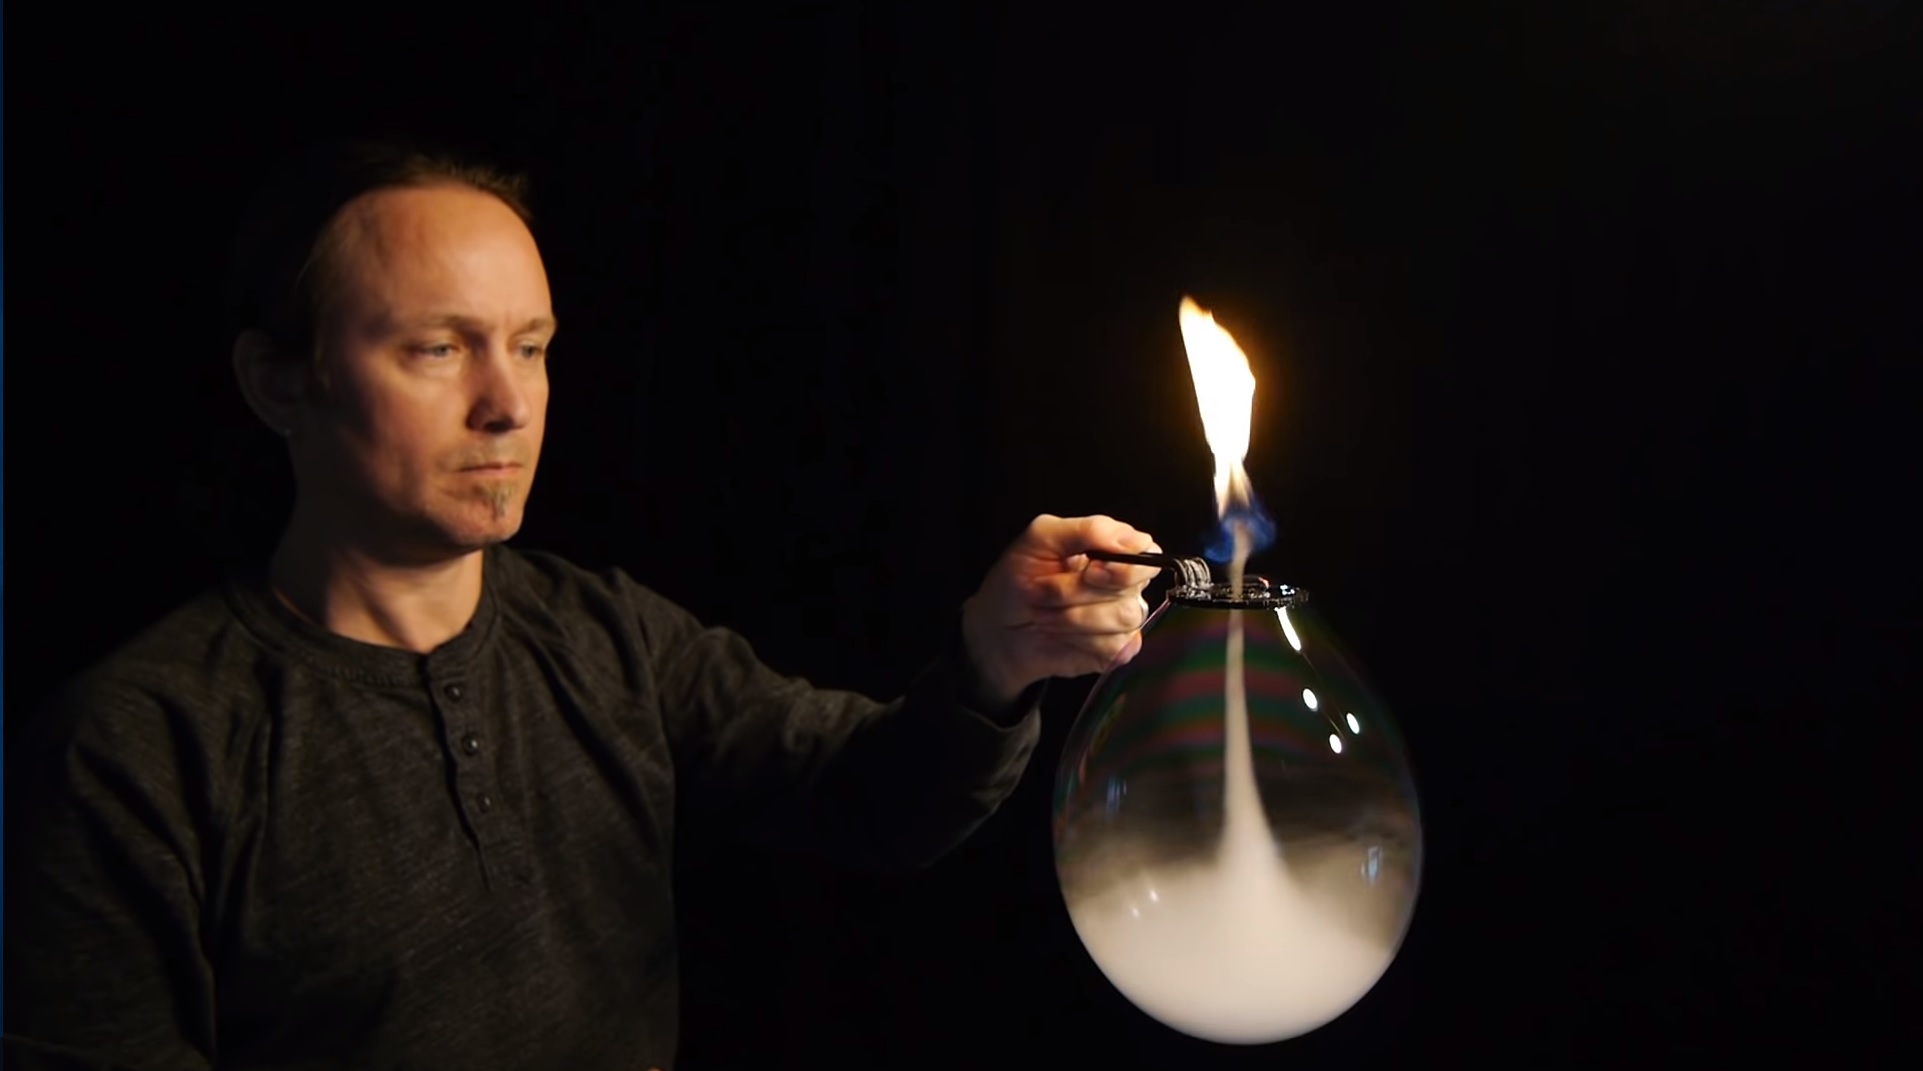 Impressionnant ! Un artiste fait une tornade de feu avec une bulle de savon